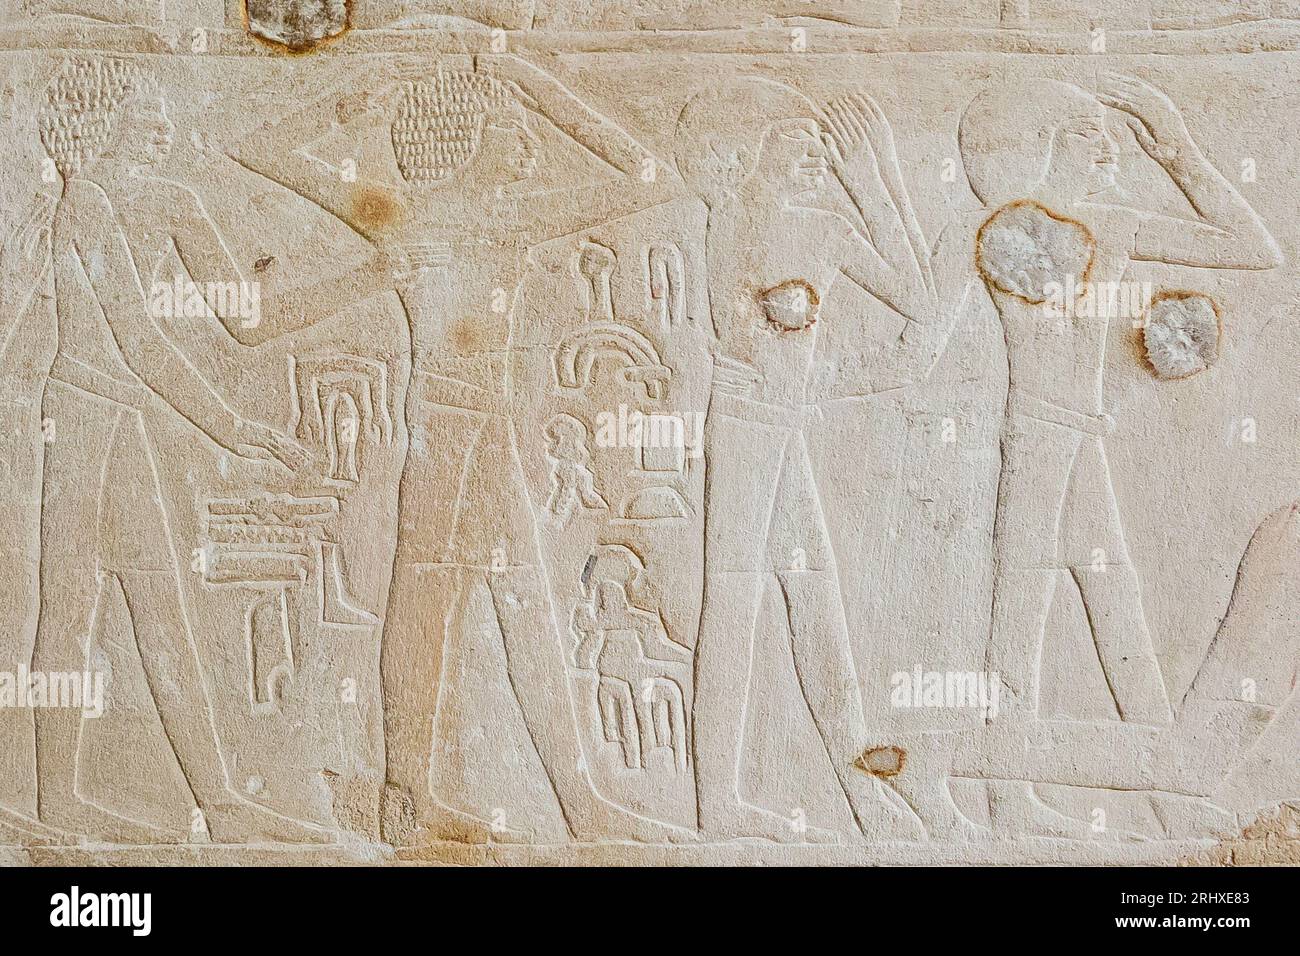 Ägypten, Sakkara, Grab von Ankhmahor, Beerdigungszug, männliche Trauernde. Stockfoto